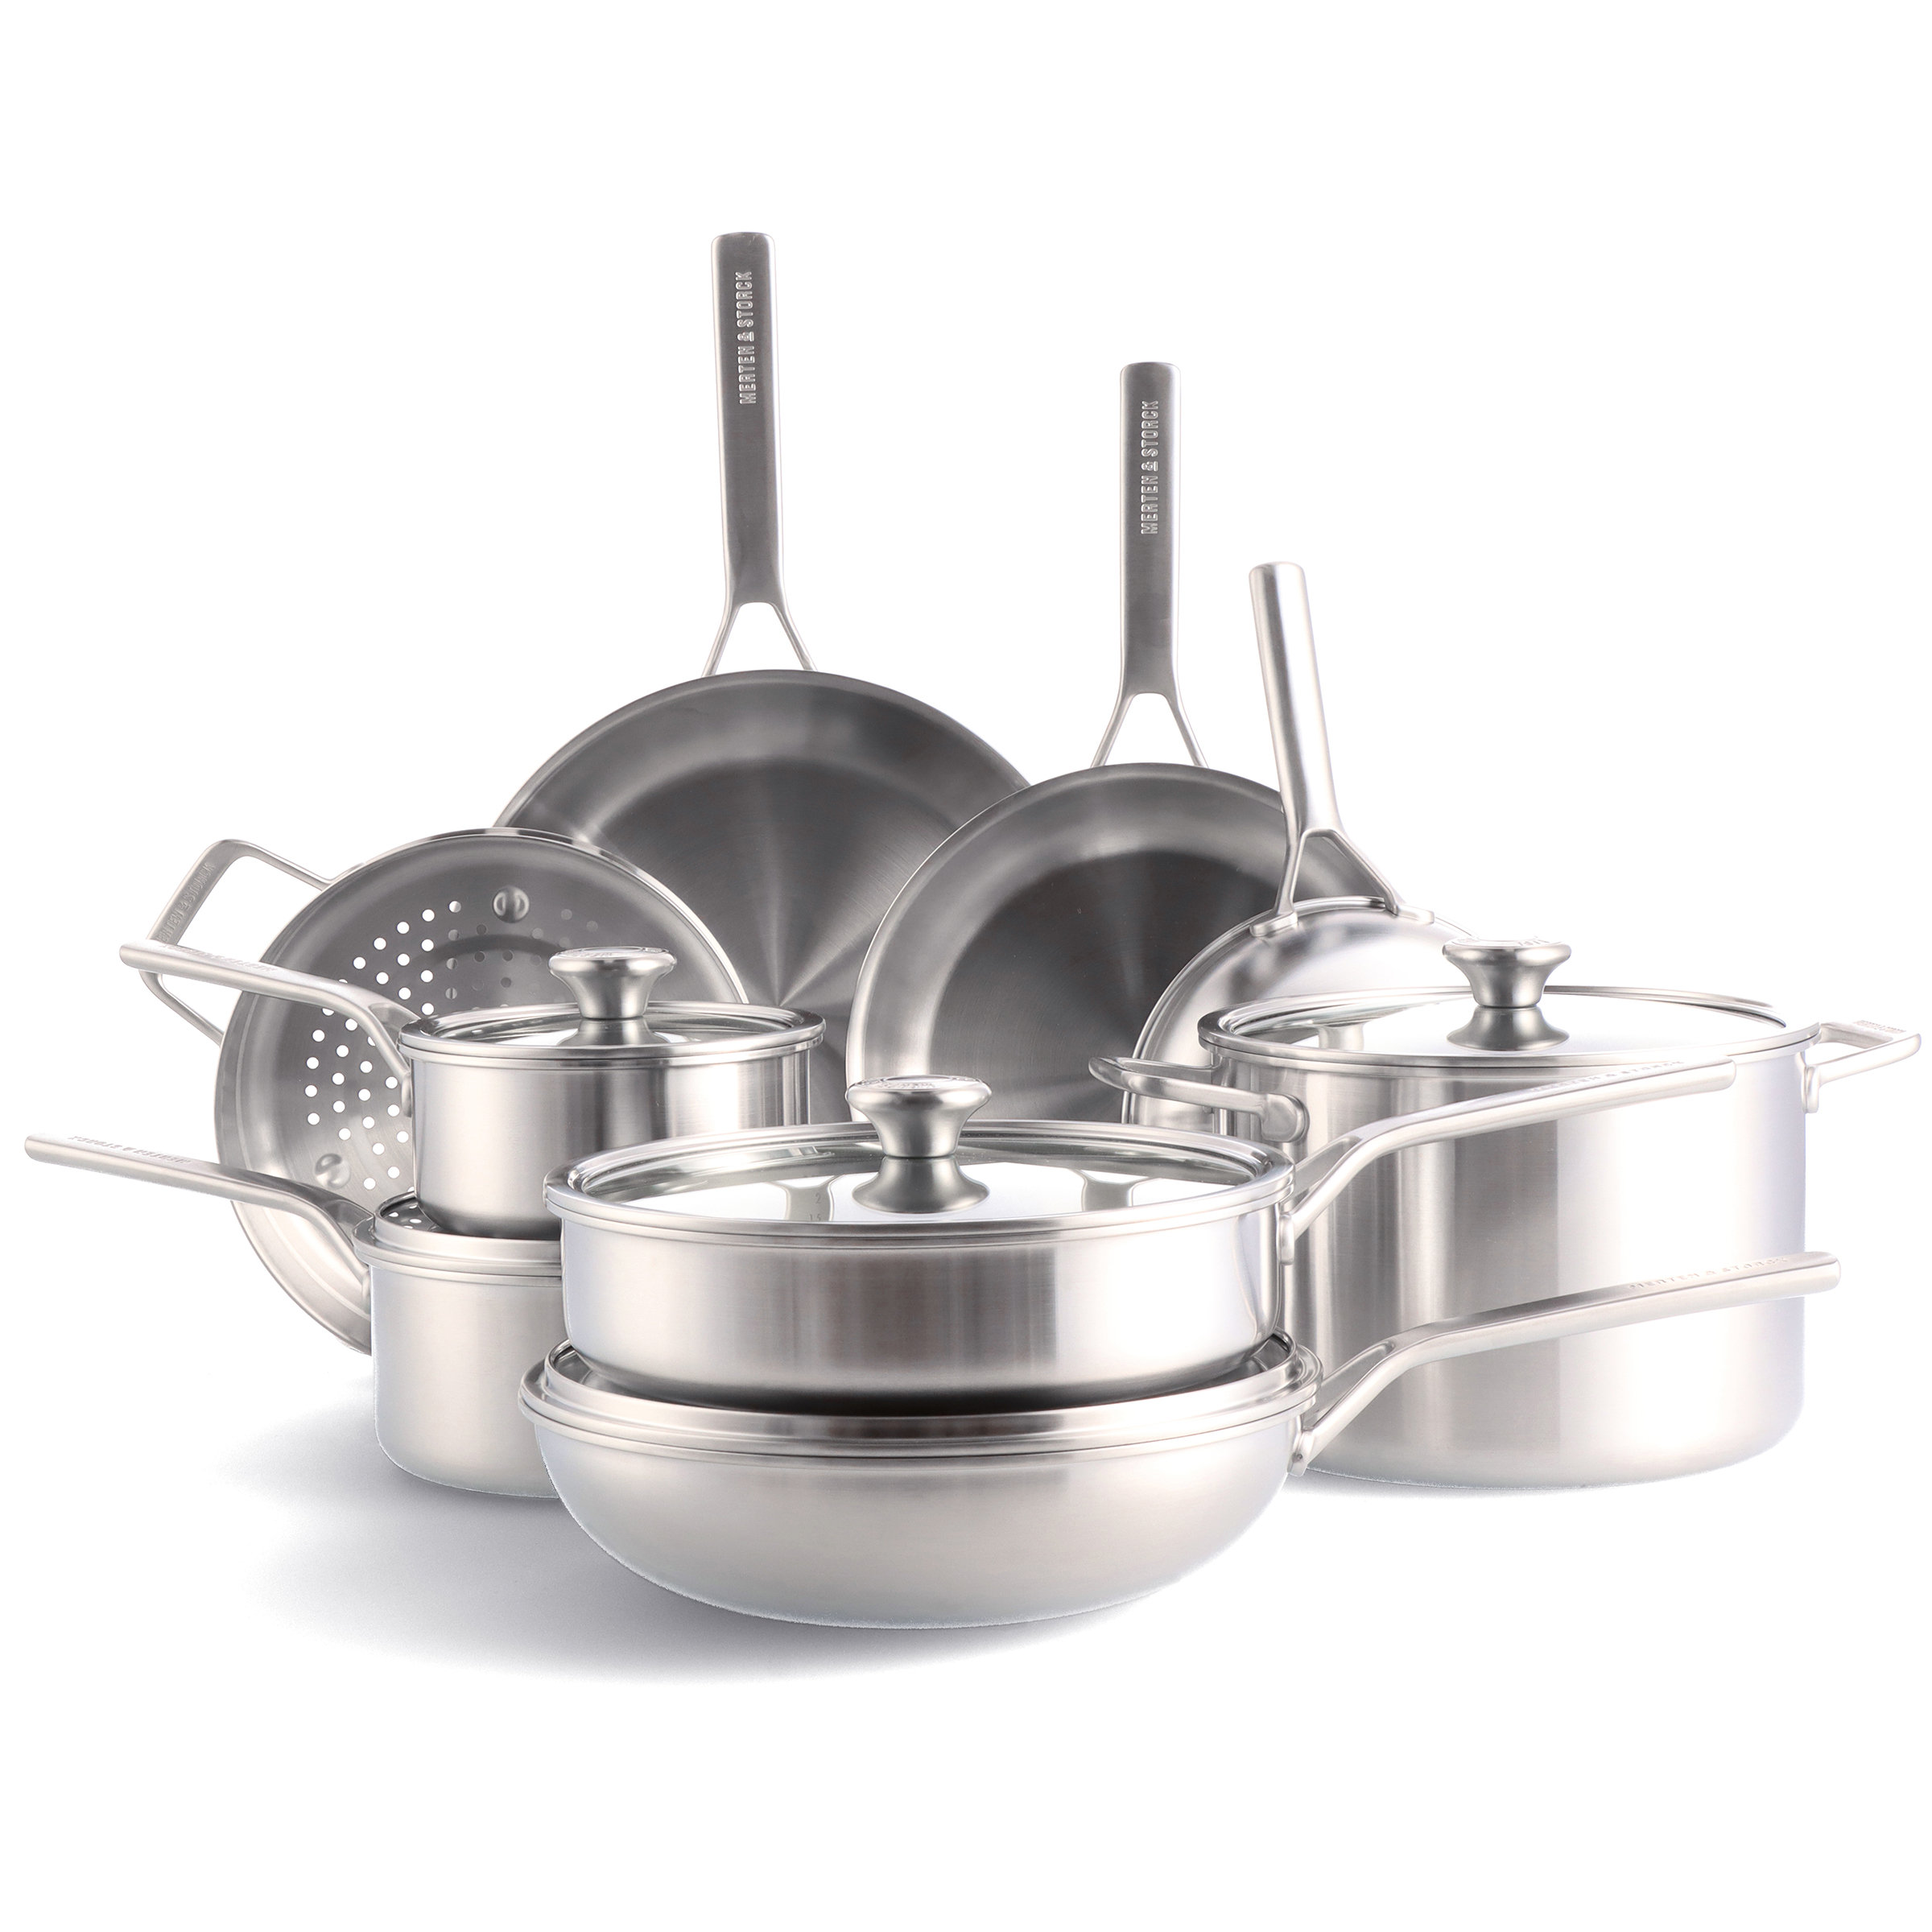 https://assets.wfcdn.com/im/34200301/compr-r85/1988/198815955/14-piece-non-stick-stainless-steel-cookware-set.jpg